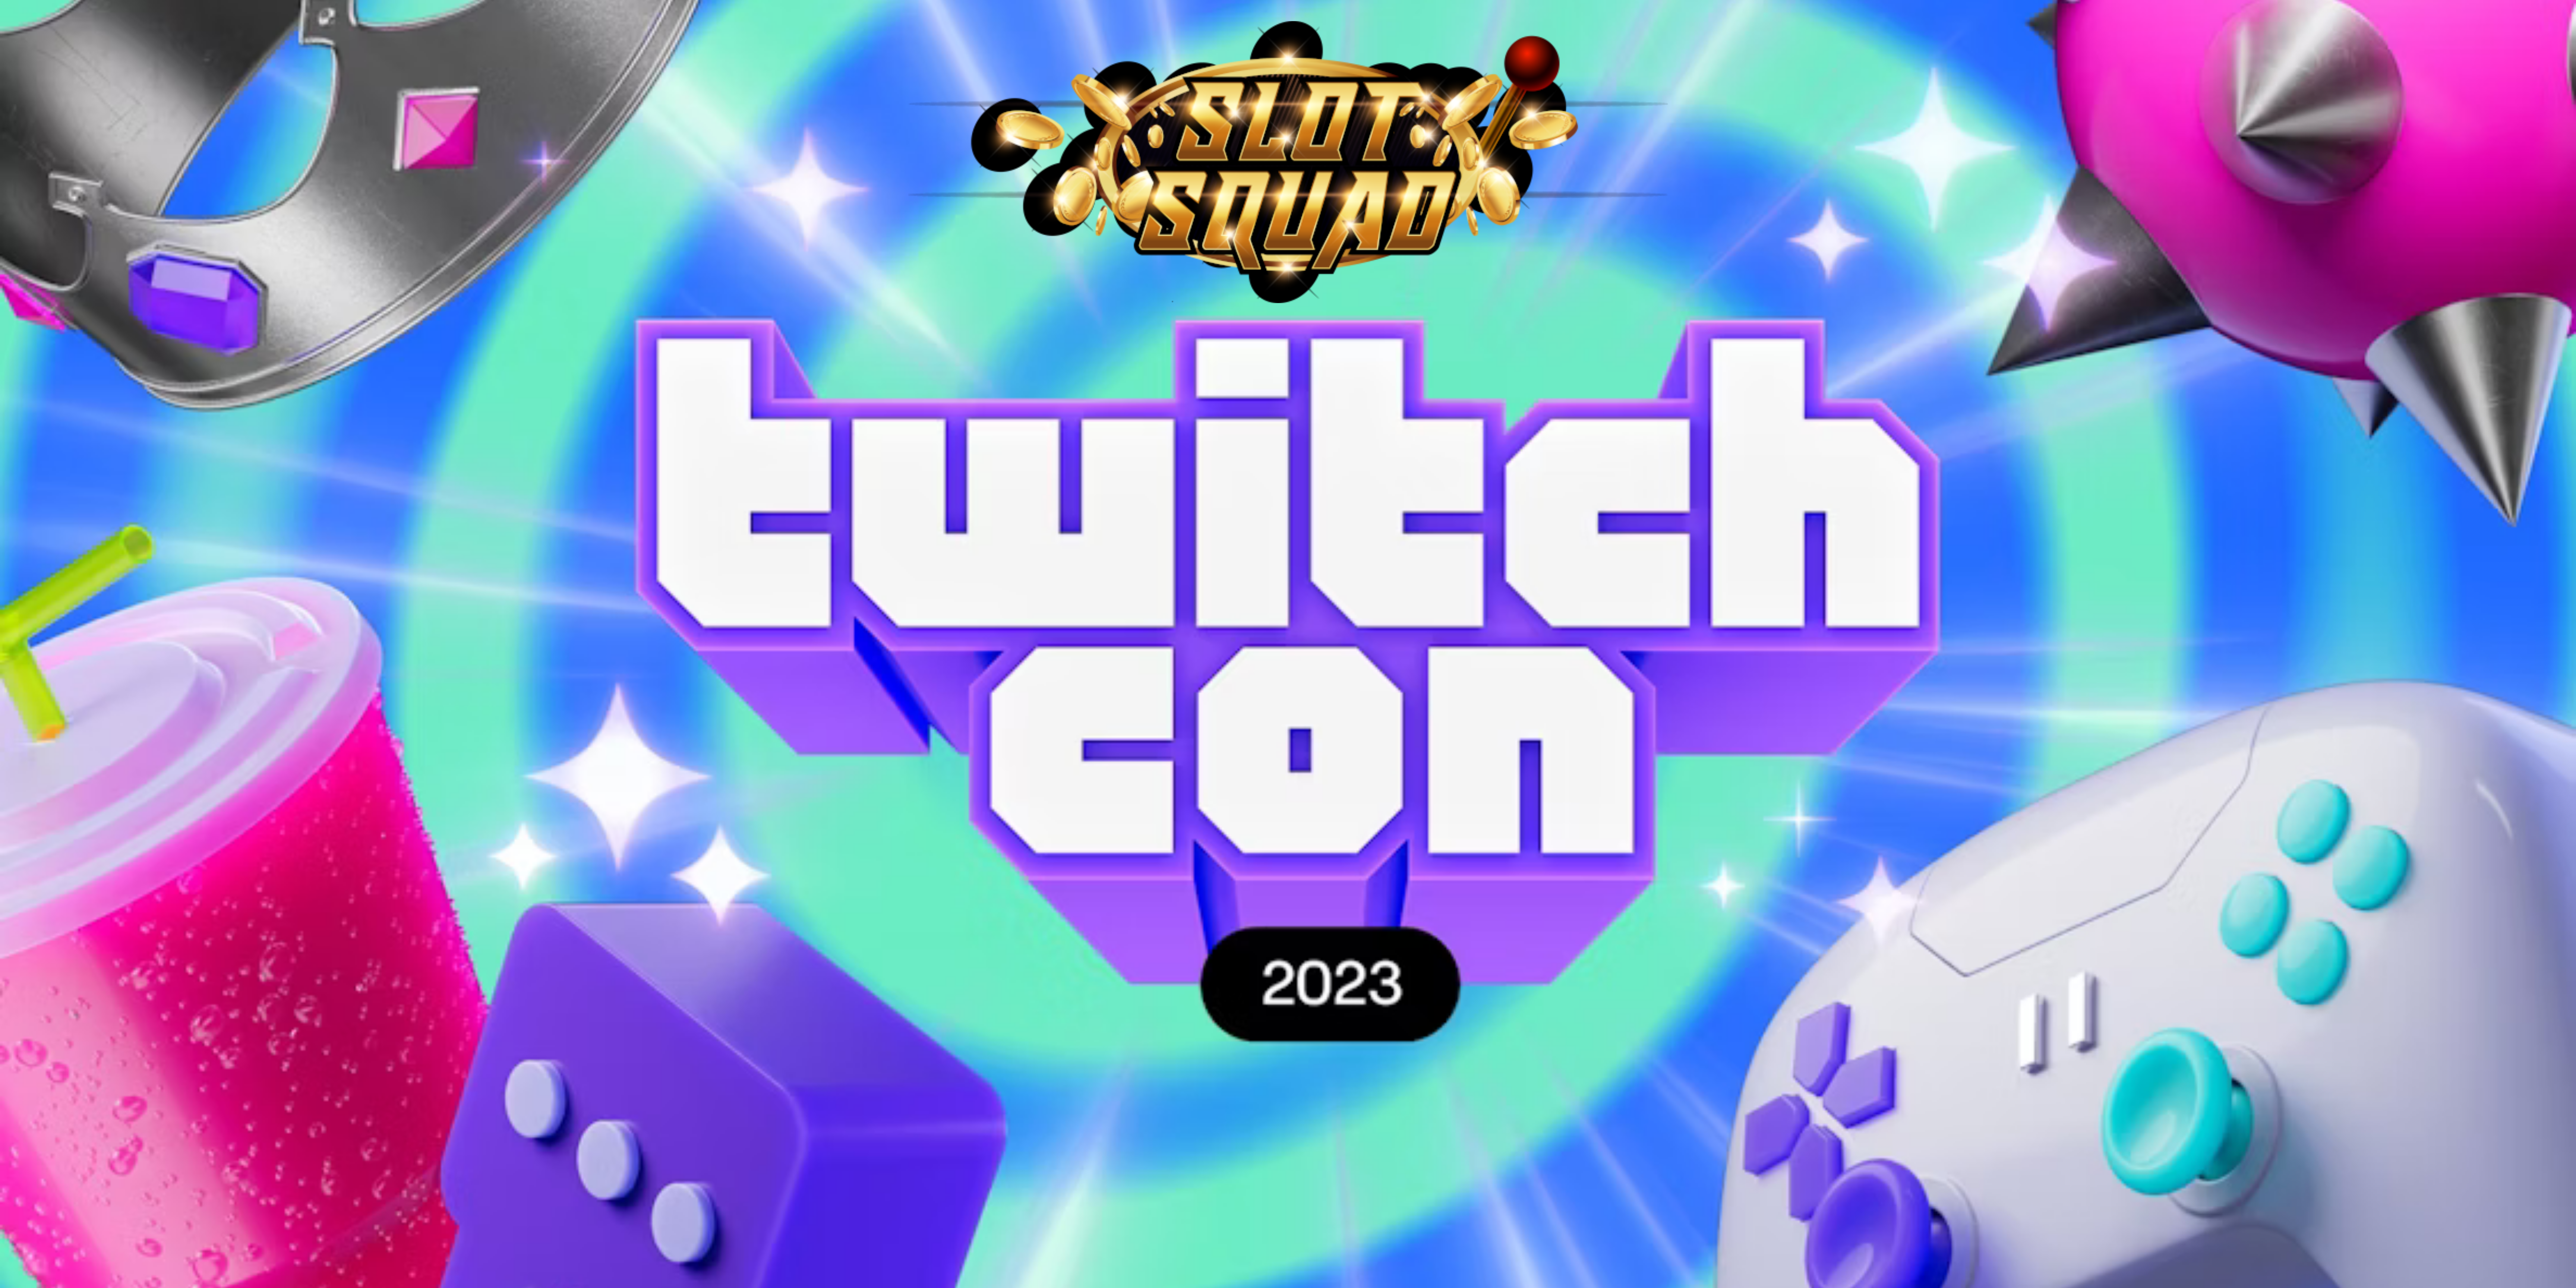 TwitchCon 2023